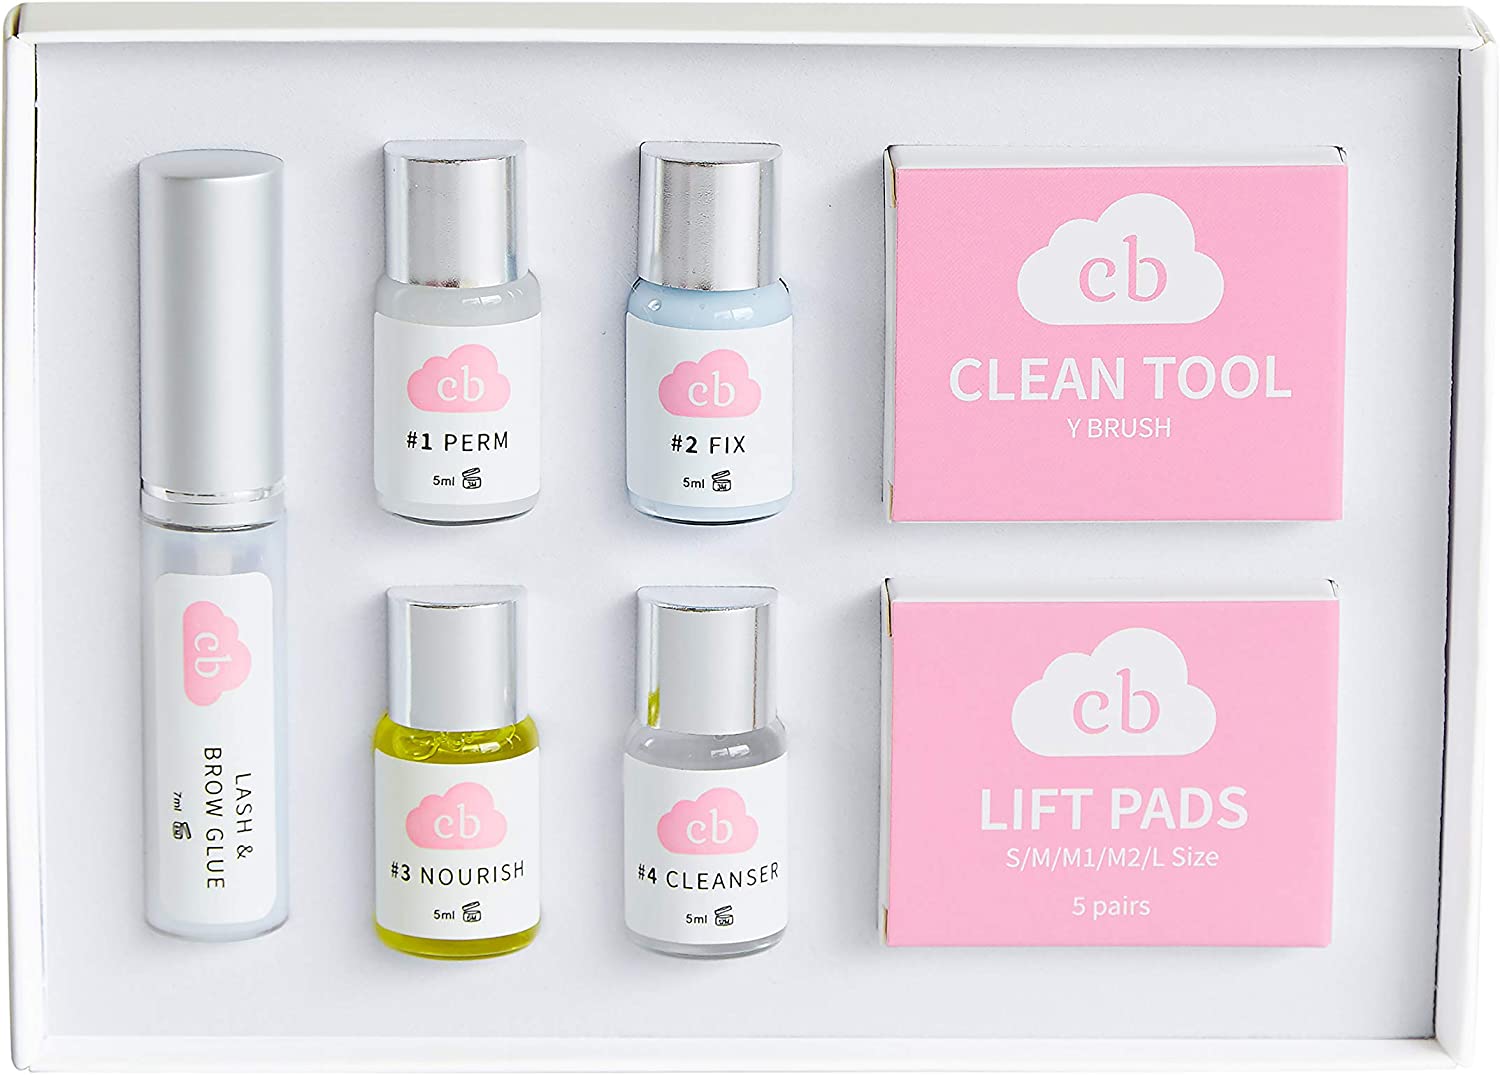 Lovate Beauty Lash Lift Kit with Color | Lash Lift Tool | Brow Lamination Kit | Eyelash Lift Kit | Eyelash Perm Kit | Eyebrow Lamination Kit